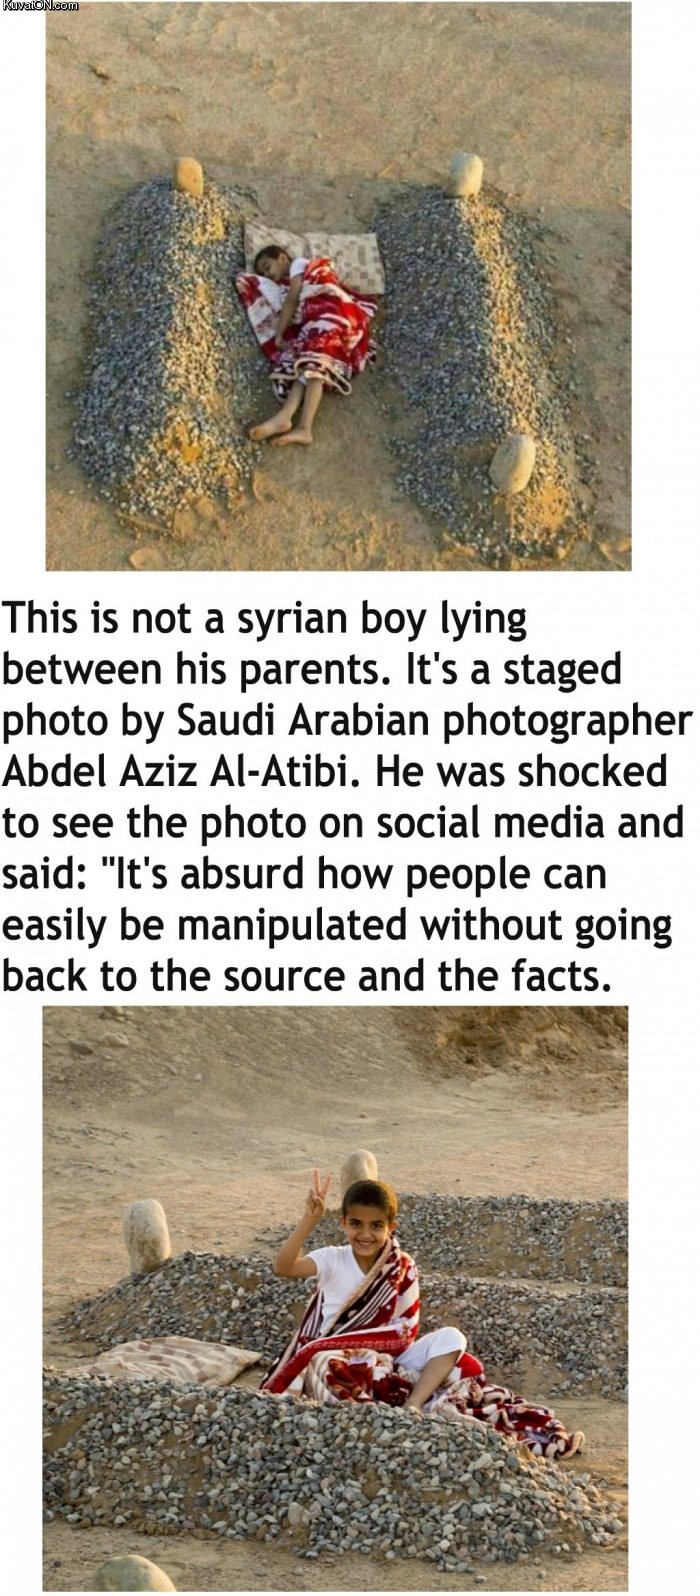 not_a_syrian_boy.jpg